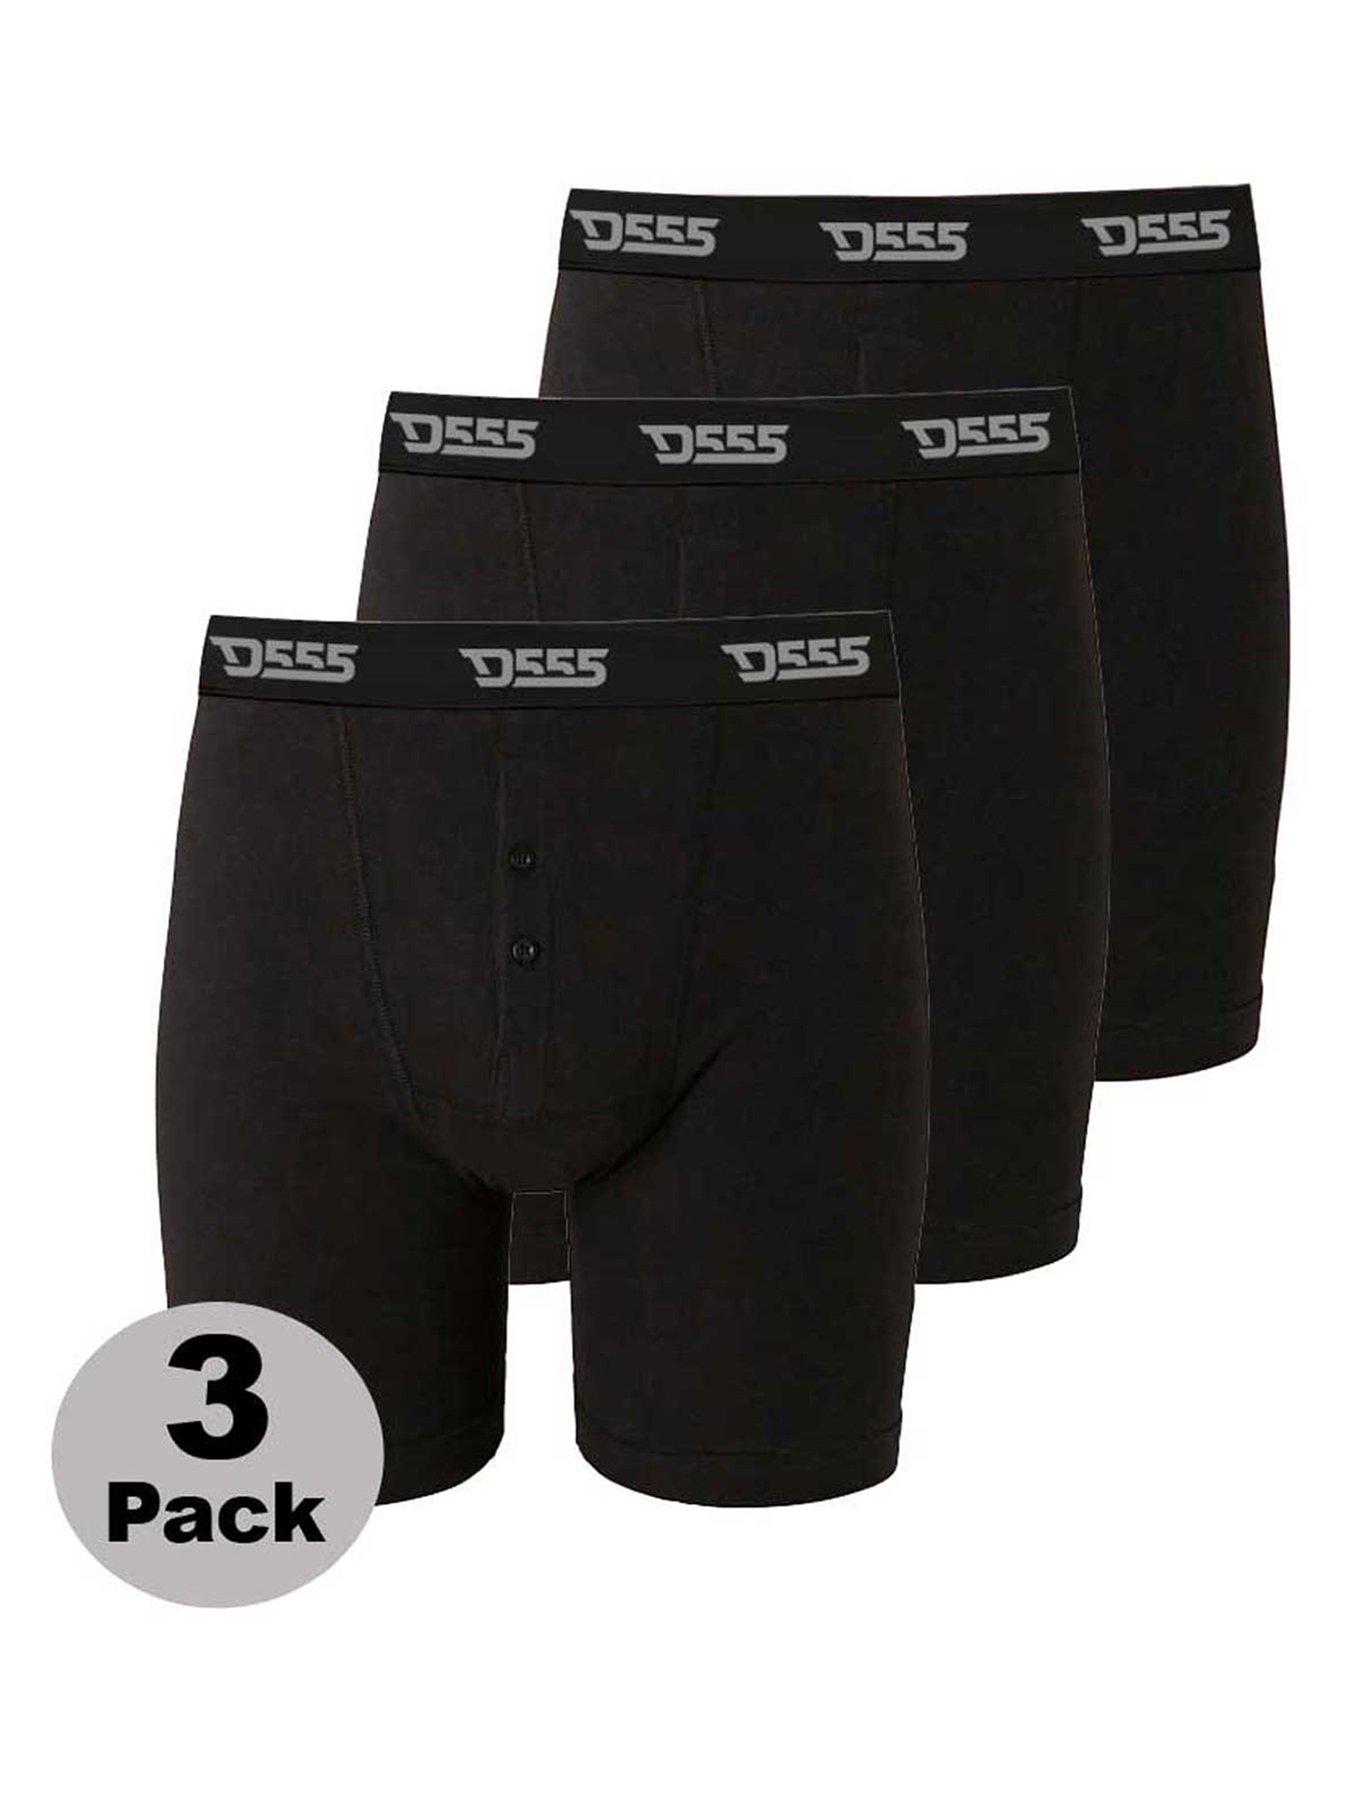 Crazy Cool Underwear® Cotton Mens Boxer Briefs Underwear 3-Pack Set Plain  Black